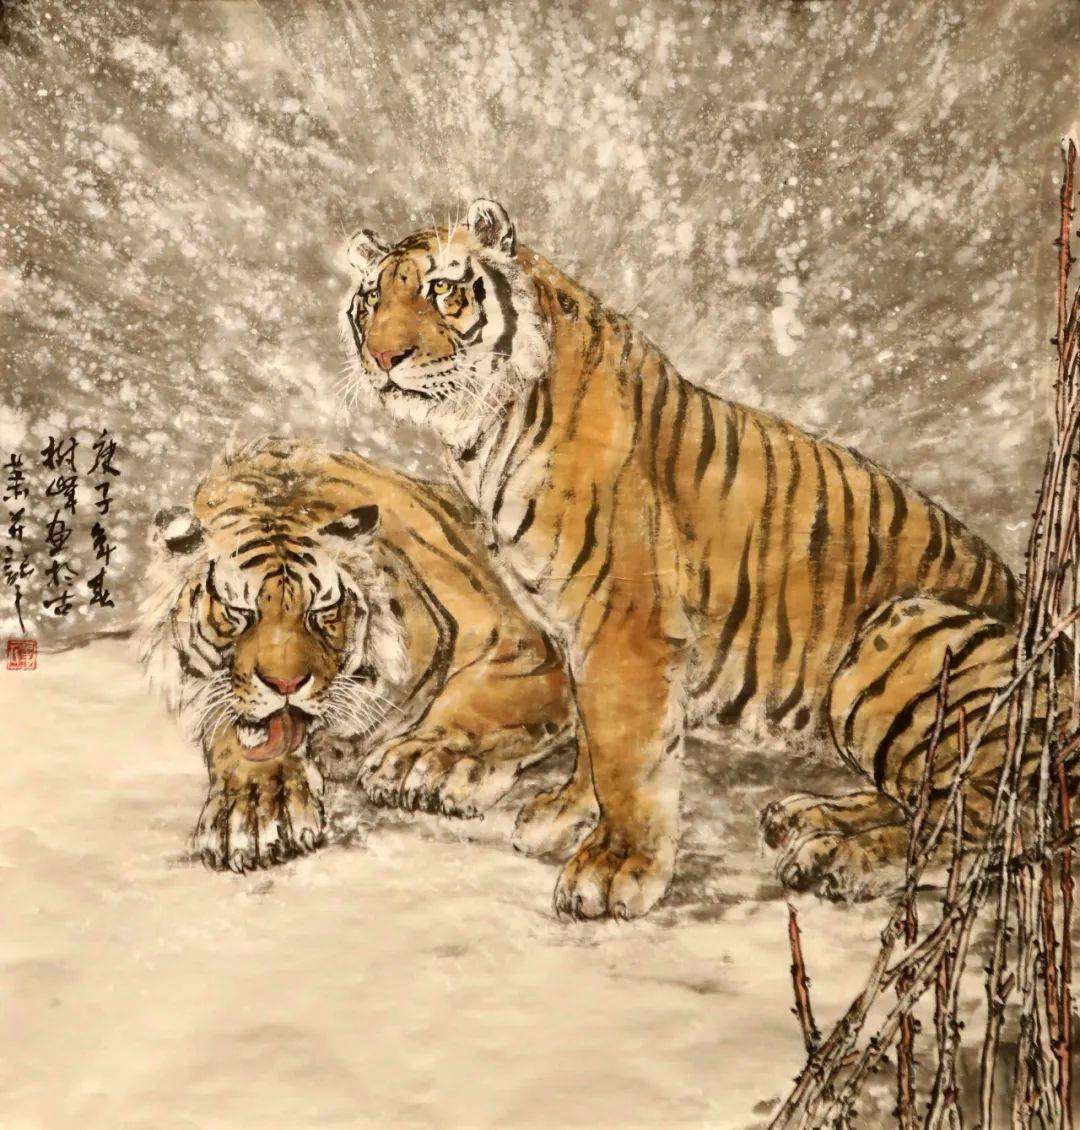 单树峰,原名单衍河,1970年出生于萧县,中国美术家